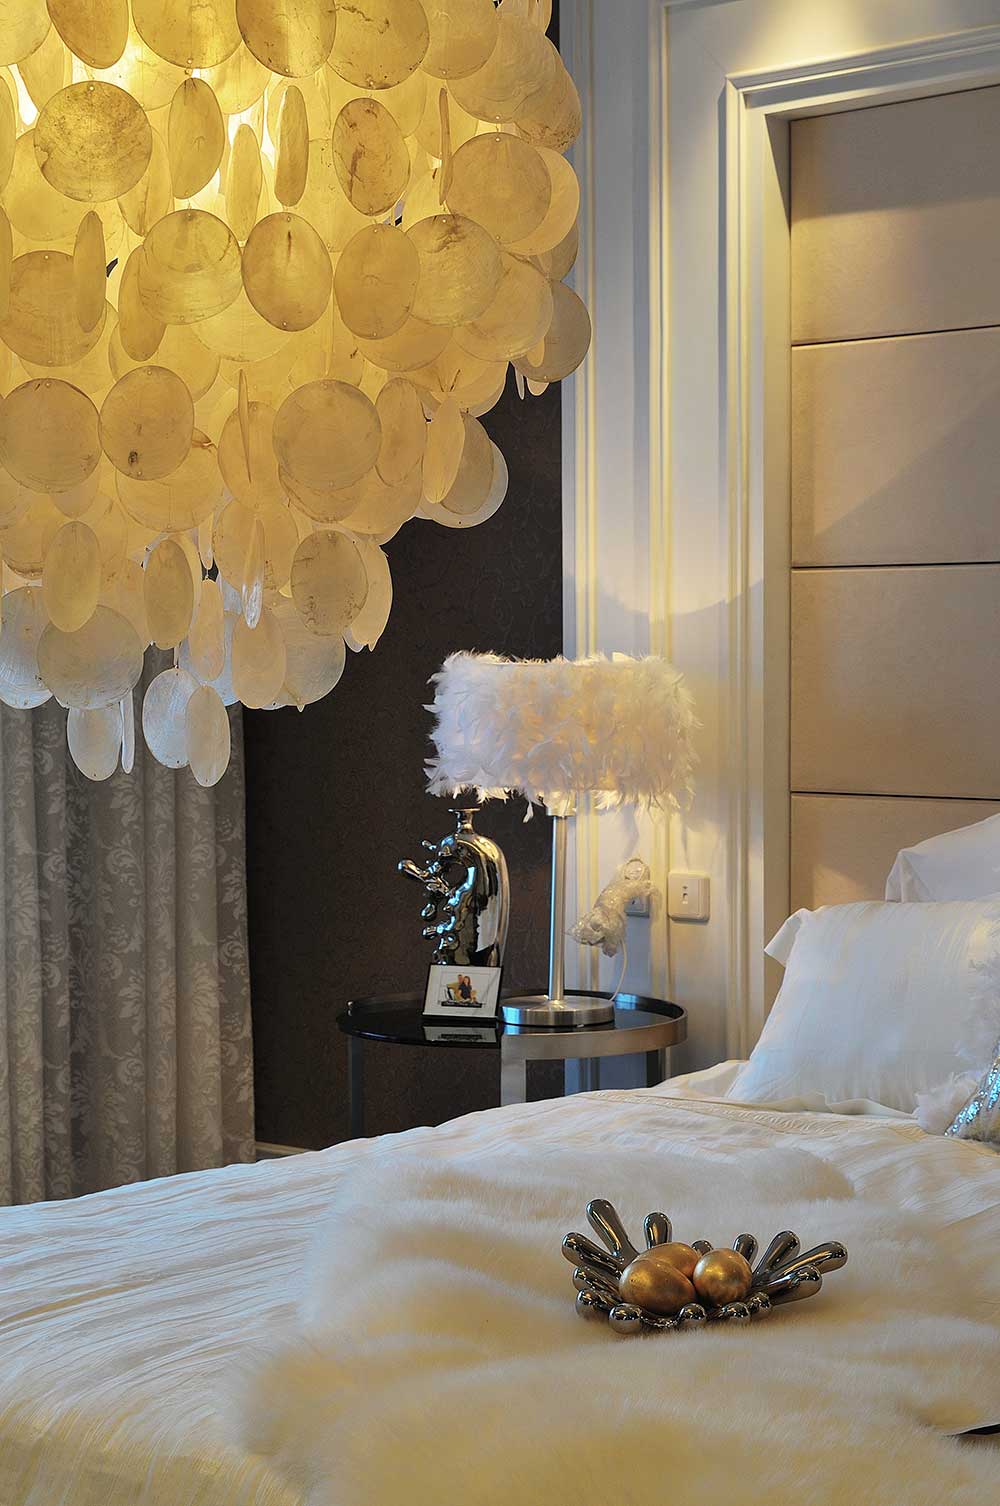 主卧的床上吊灯很华贵，白色羽毛片装饰在灯罩上，微弱的黄光照的整个房间暖暖的，摆件都充满了现代气息。